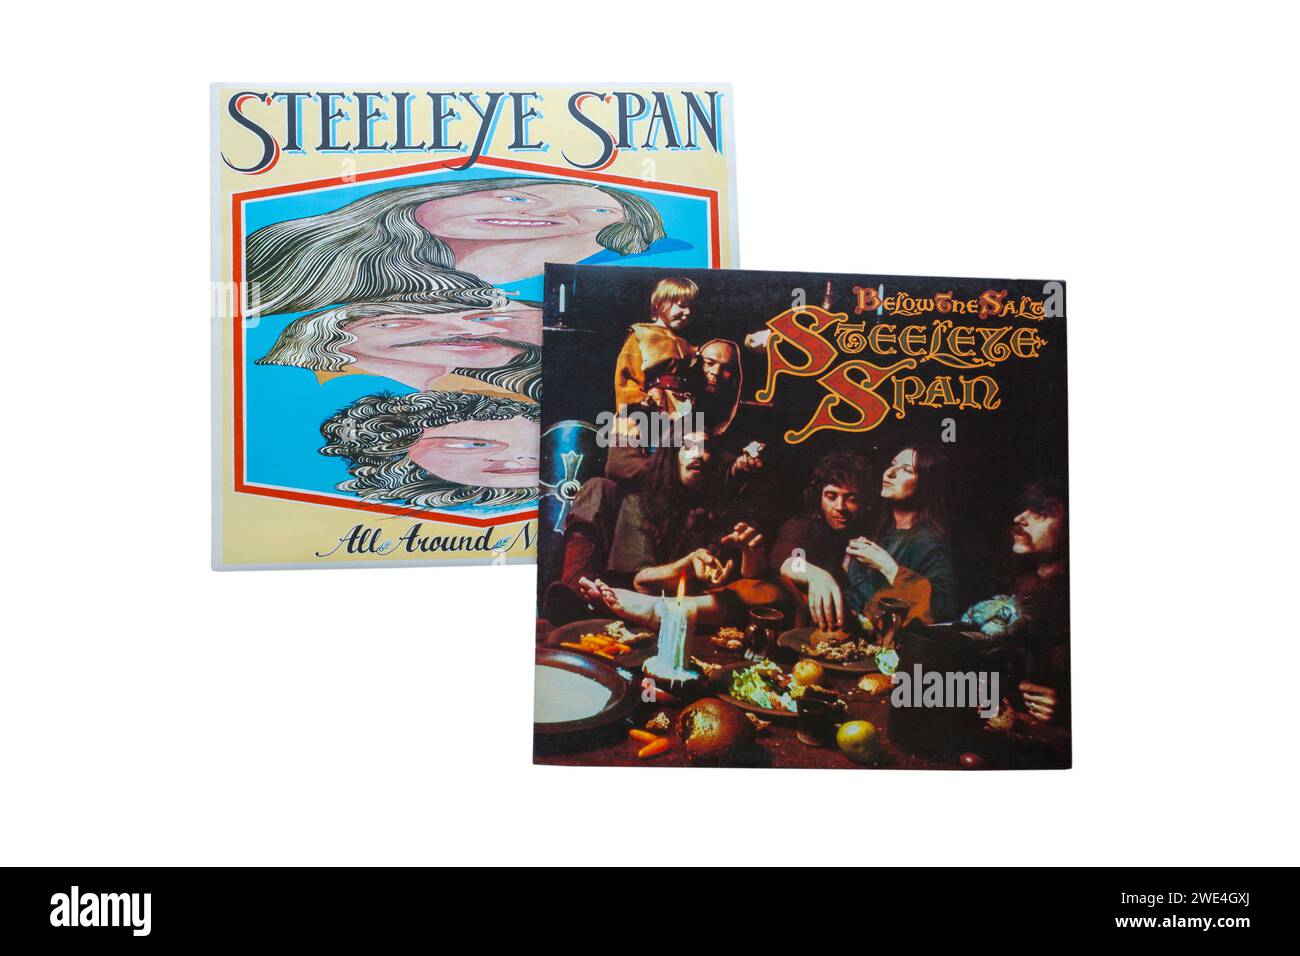 SteelEye Span Under the Salt 1972 Vinyl Album LP Cover & All Around My hat 1975 Vinyl Album LP Cover isoliert auf weißem Hintergrund Stockfoto